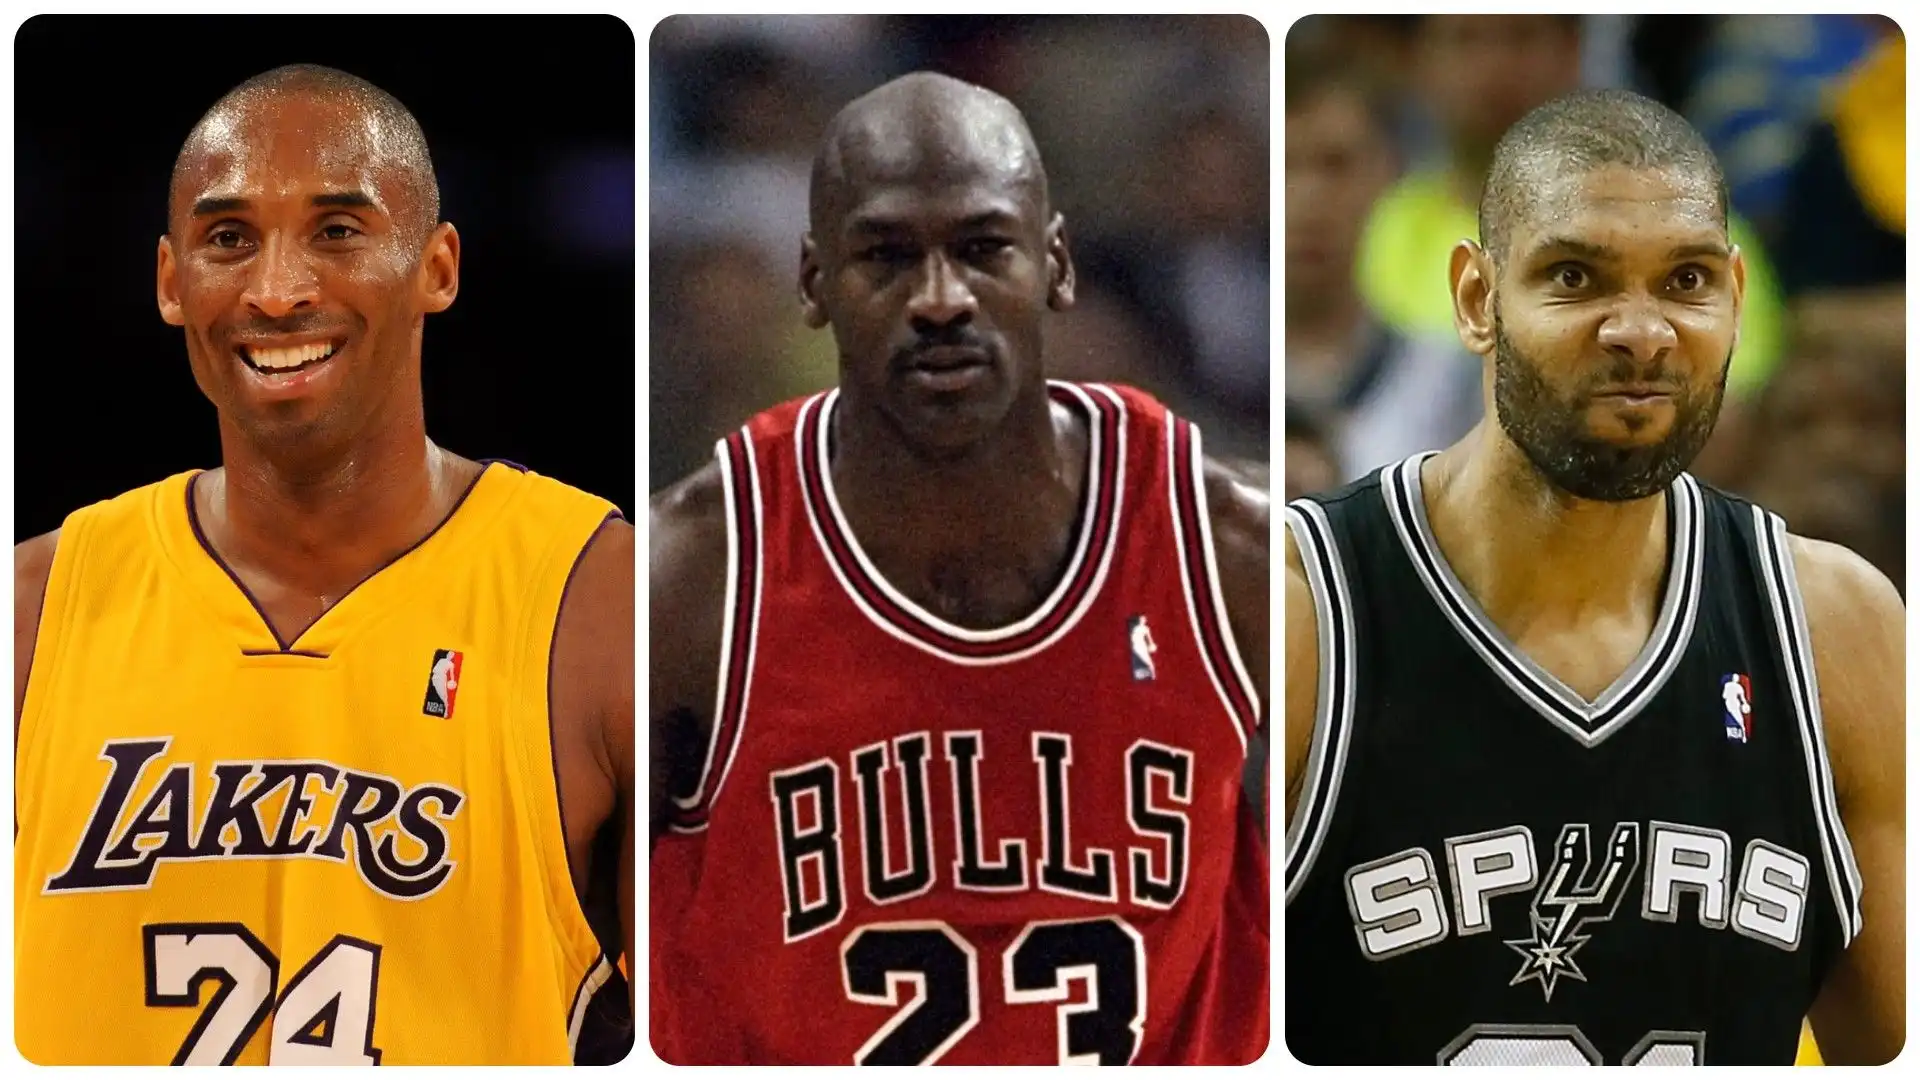 I migliori giocatori di basket della storia: foto. Fonte: ChatGPT